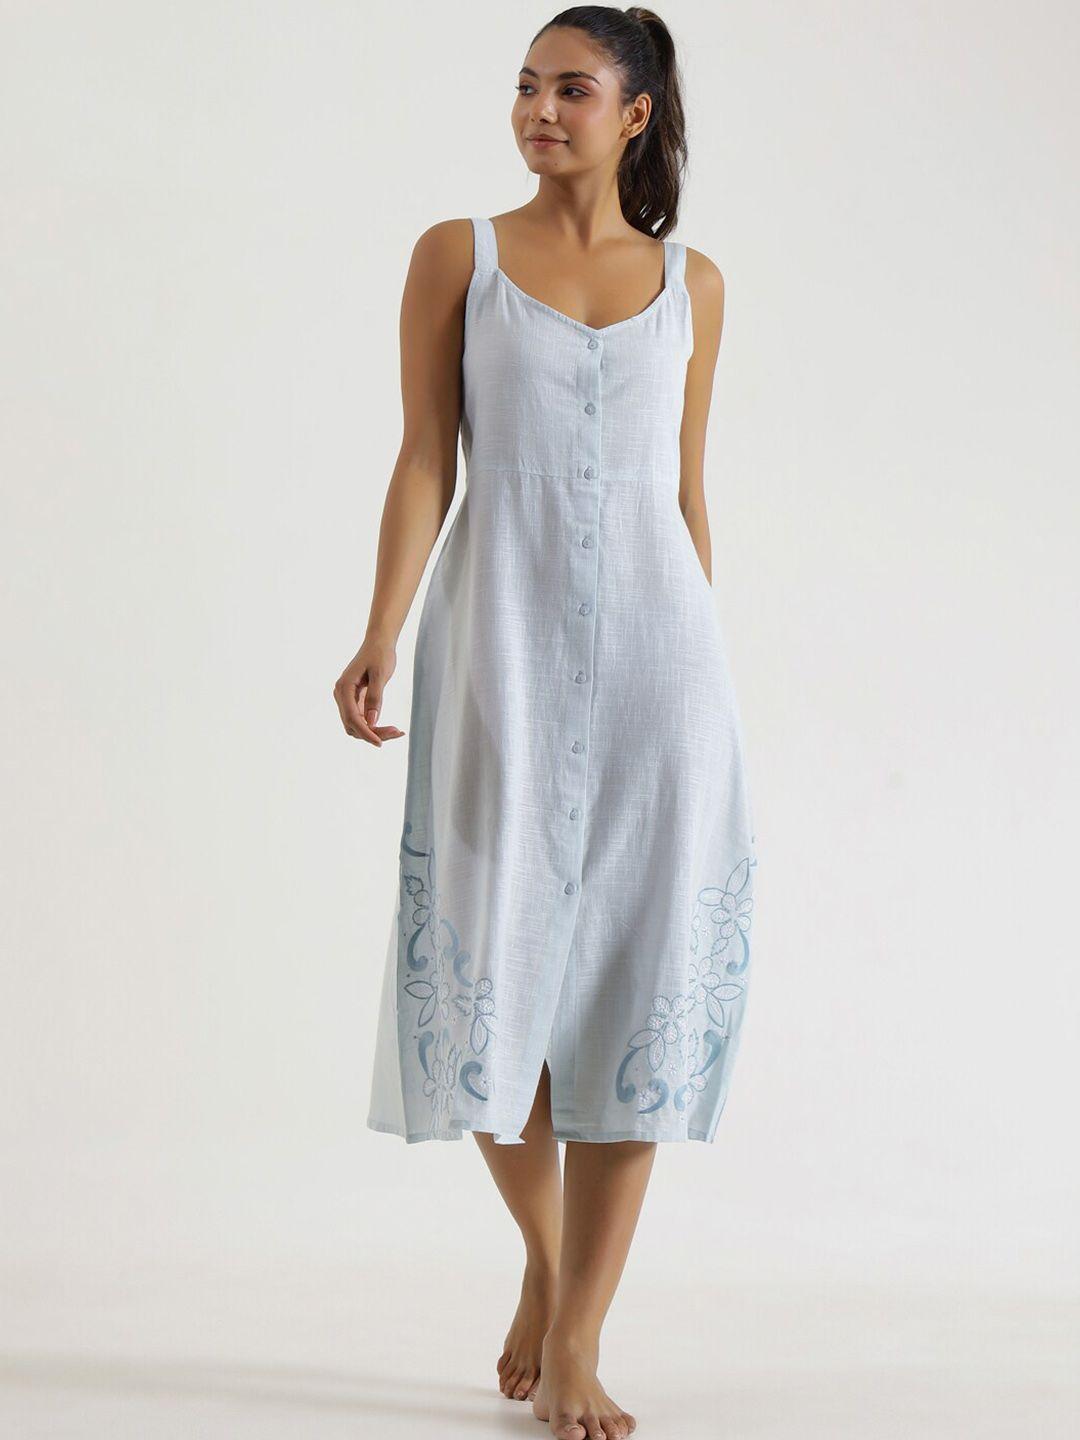 sanskrutihomes blue floral embroidered shoulder straps cotton shirt dress